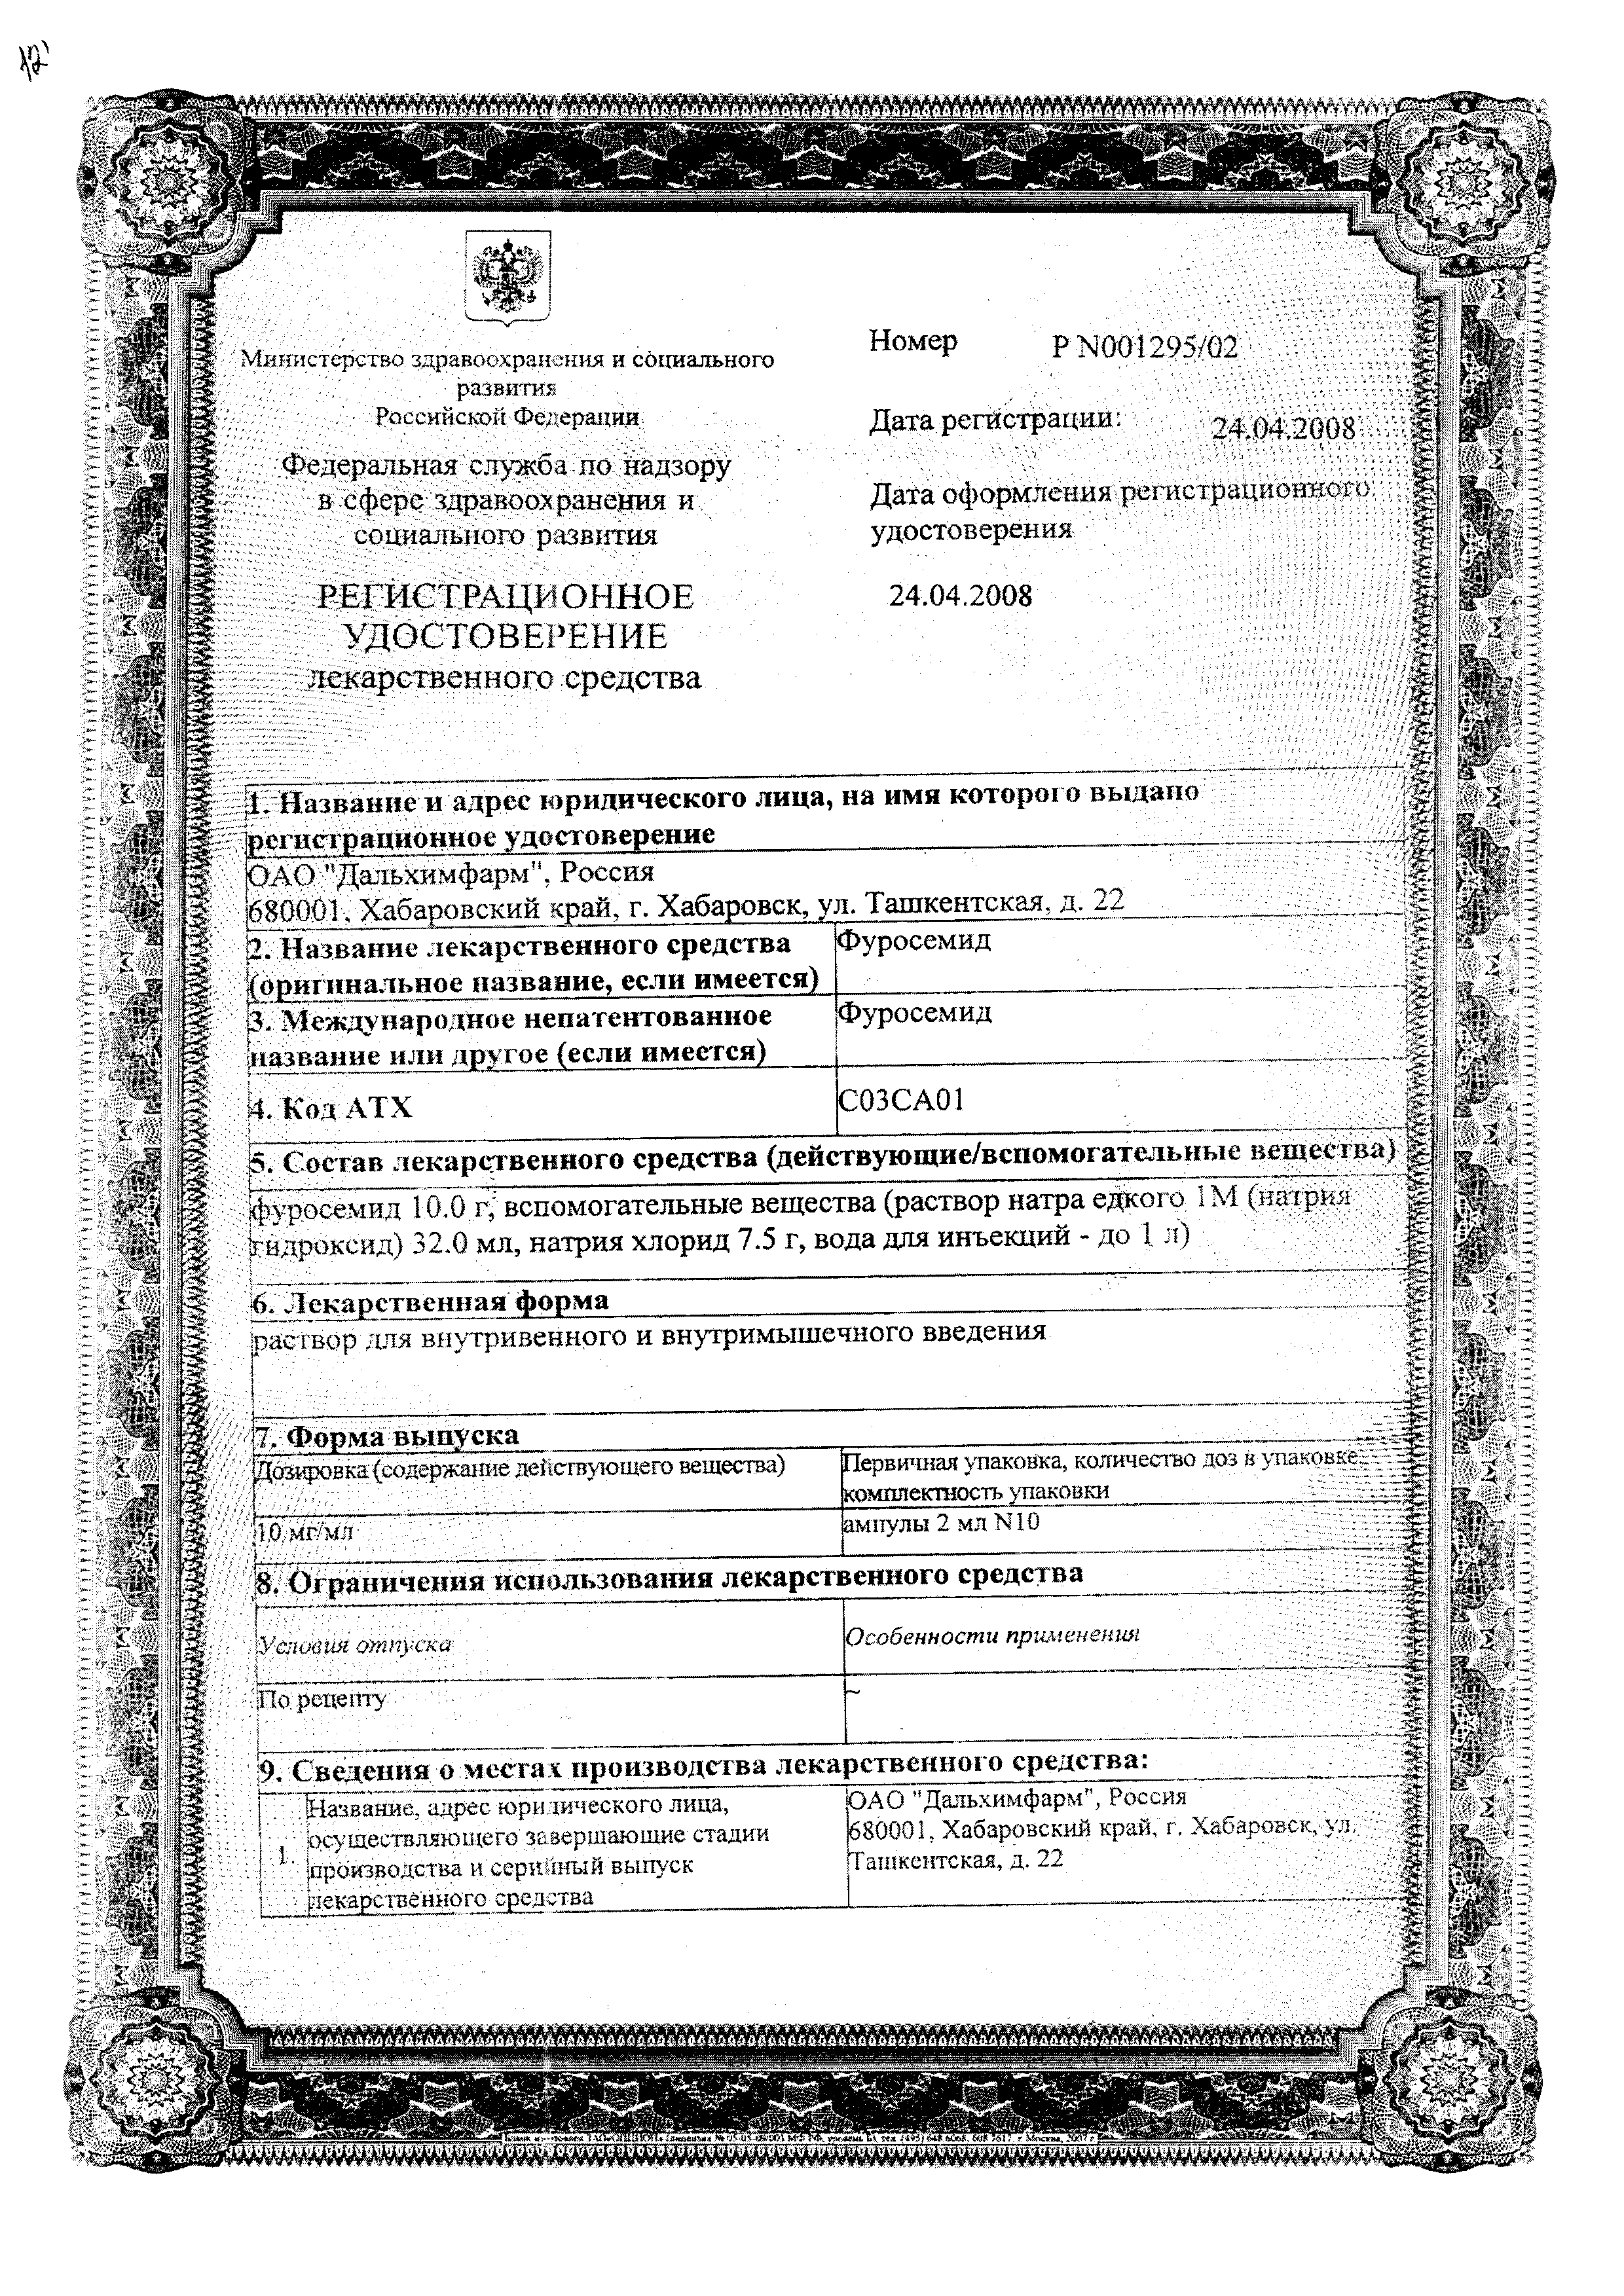 Фуросемид сертификат